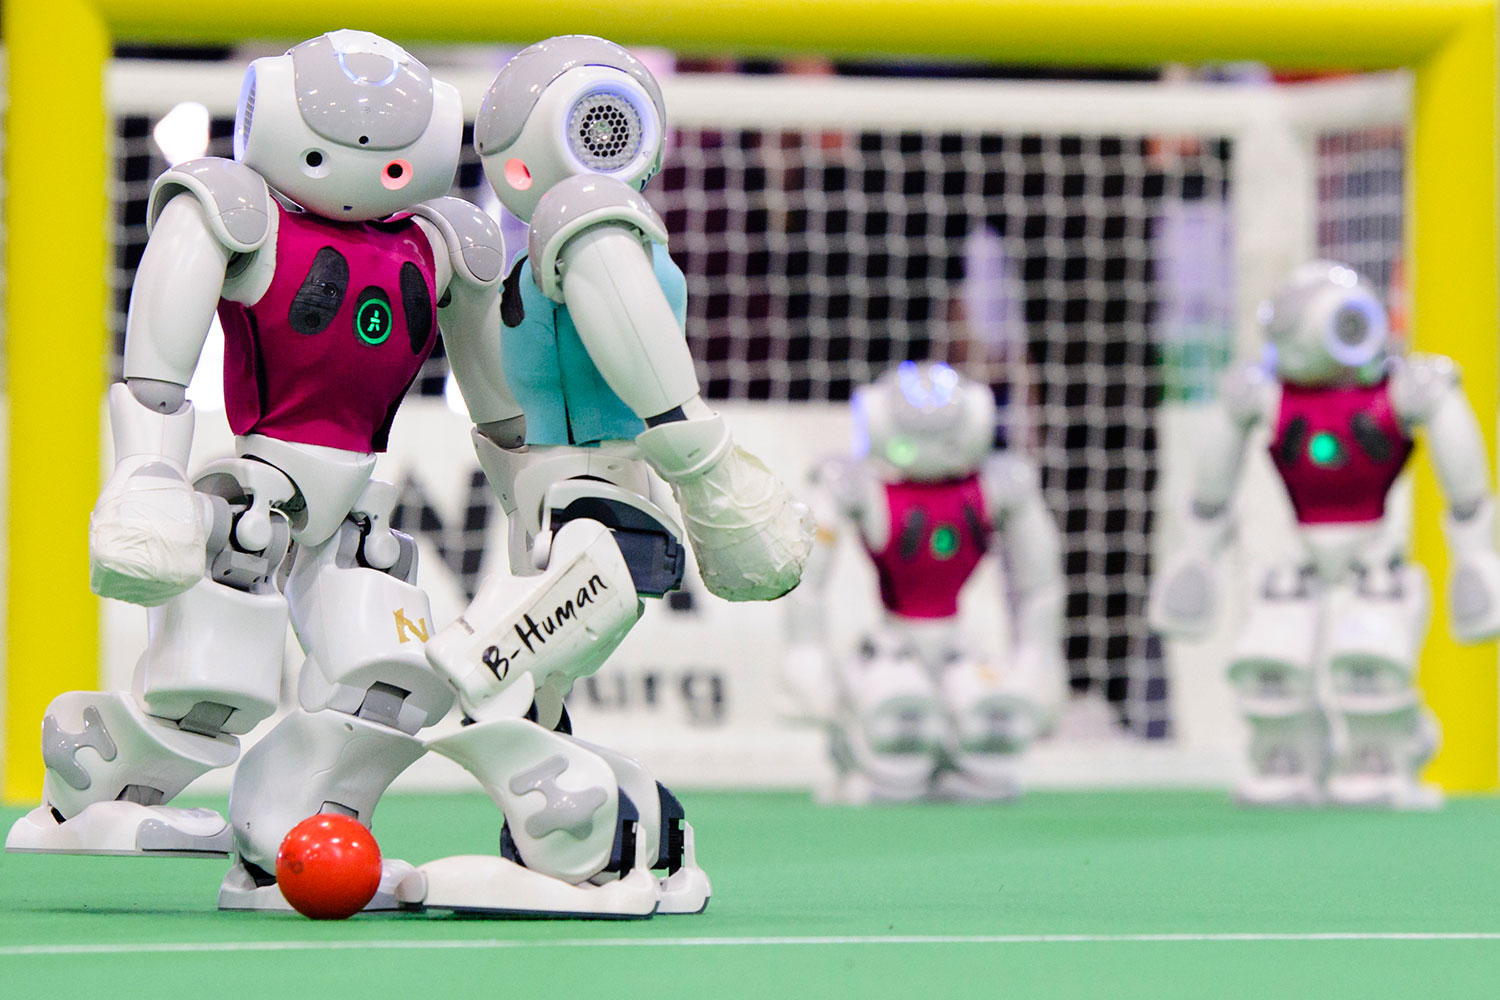 RoboCup 2014 un torneo de fútbol con jugadores robóticos